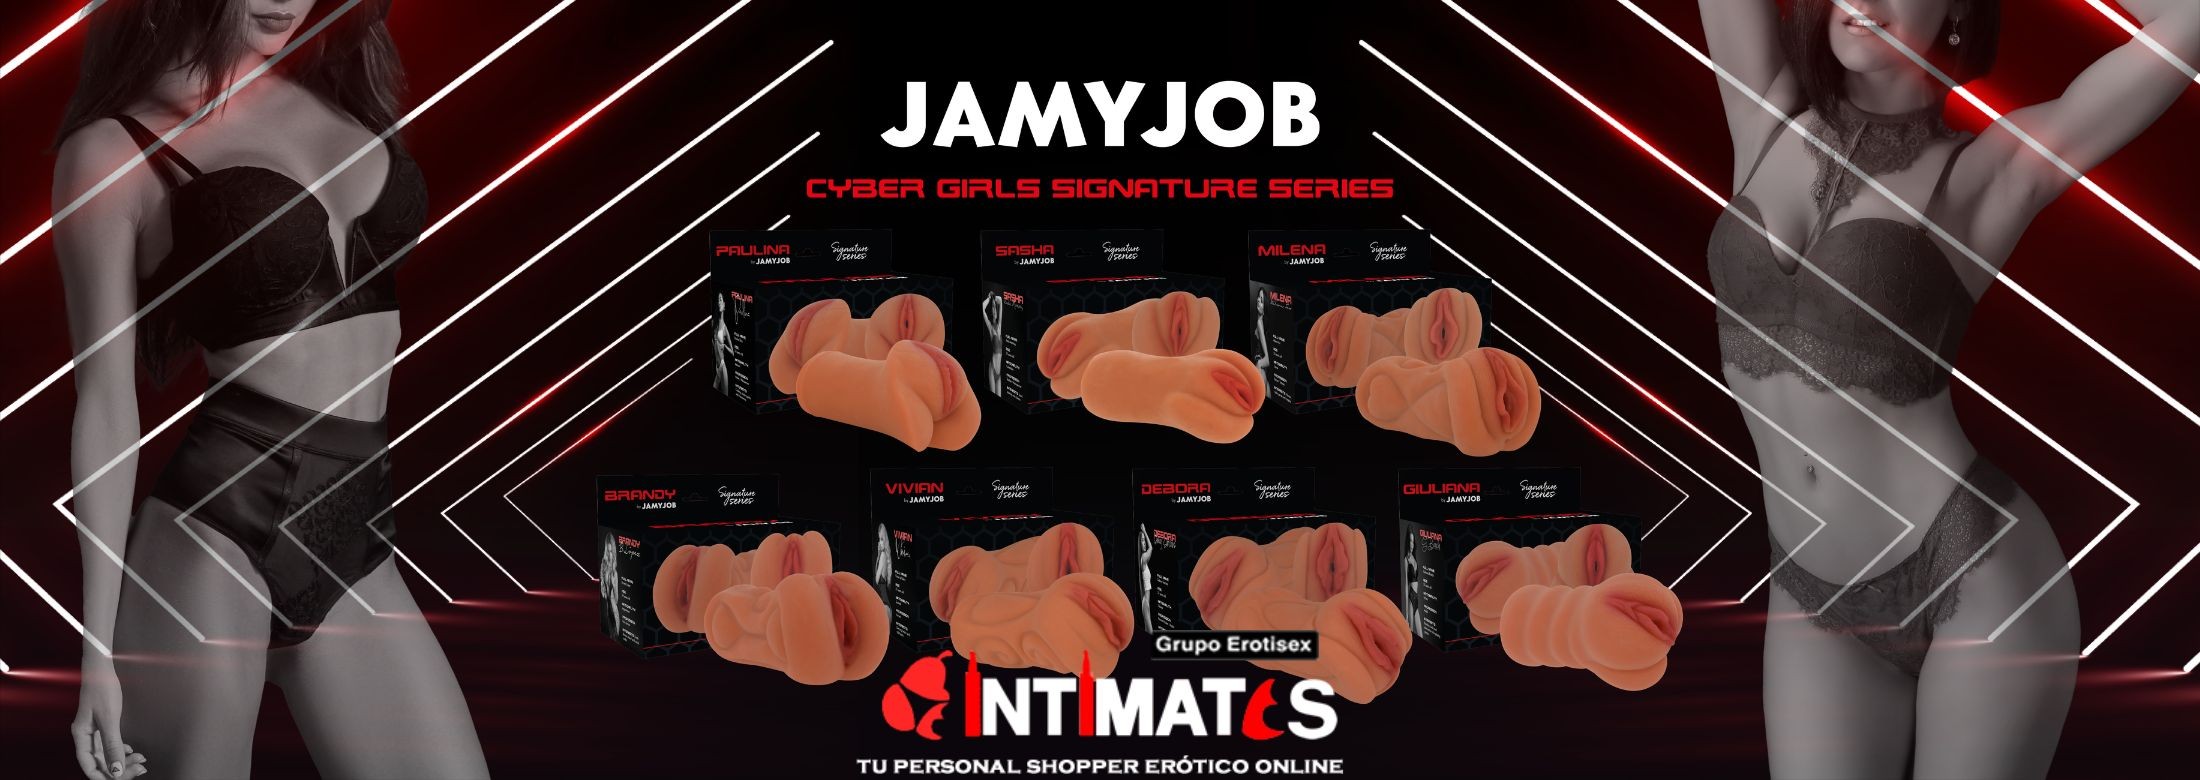 Jamyjob Signature presenta su colección de siete masturbadores perfectos para utilizarlos solo, en pareja o llevarlos contigo a cualquier lugar